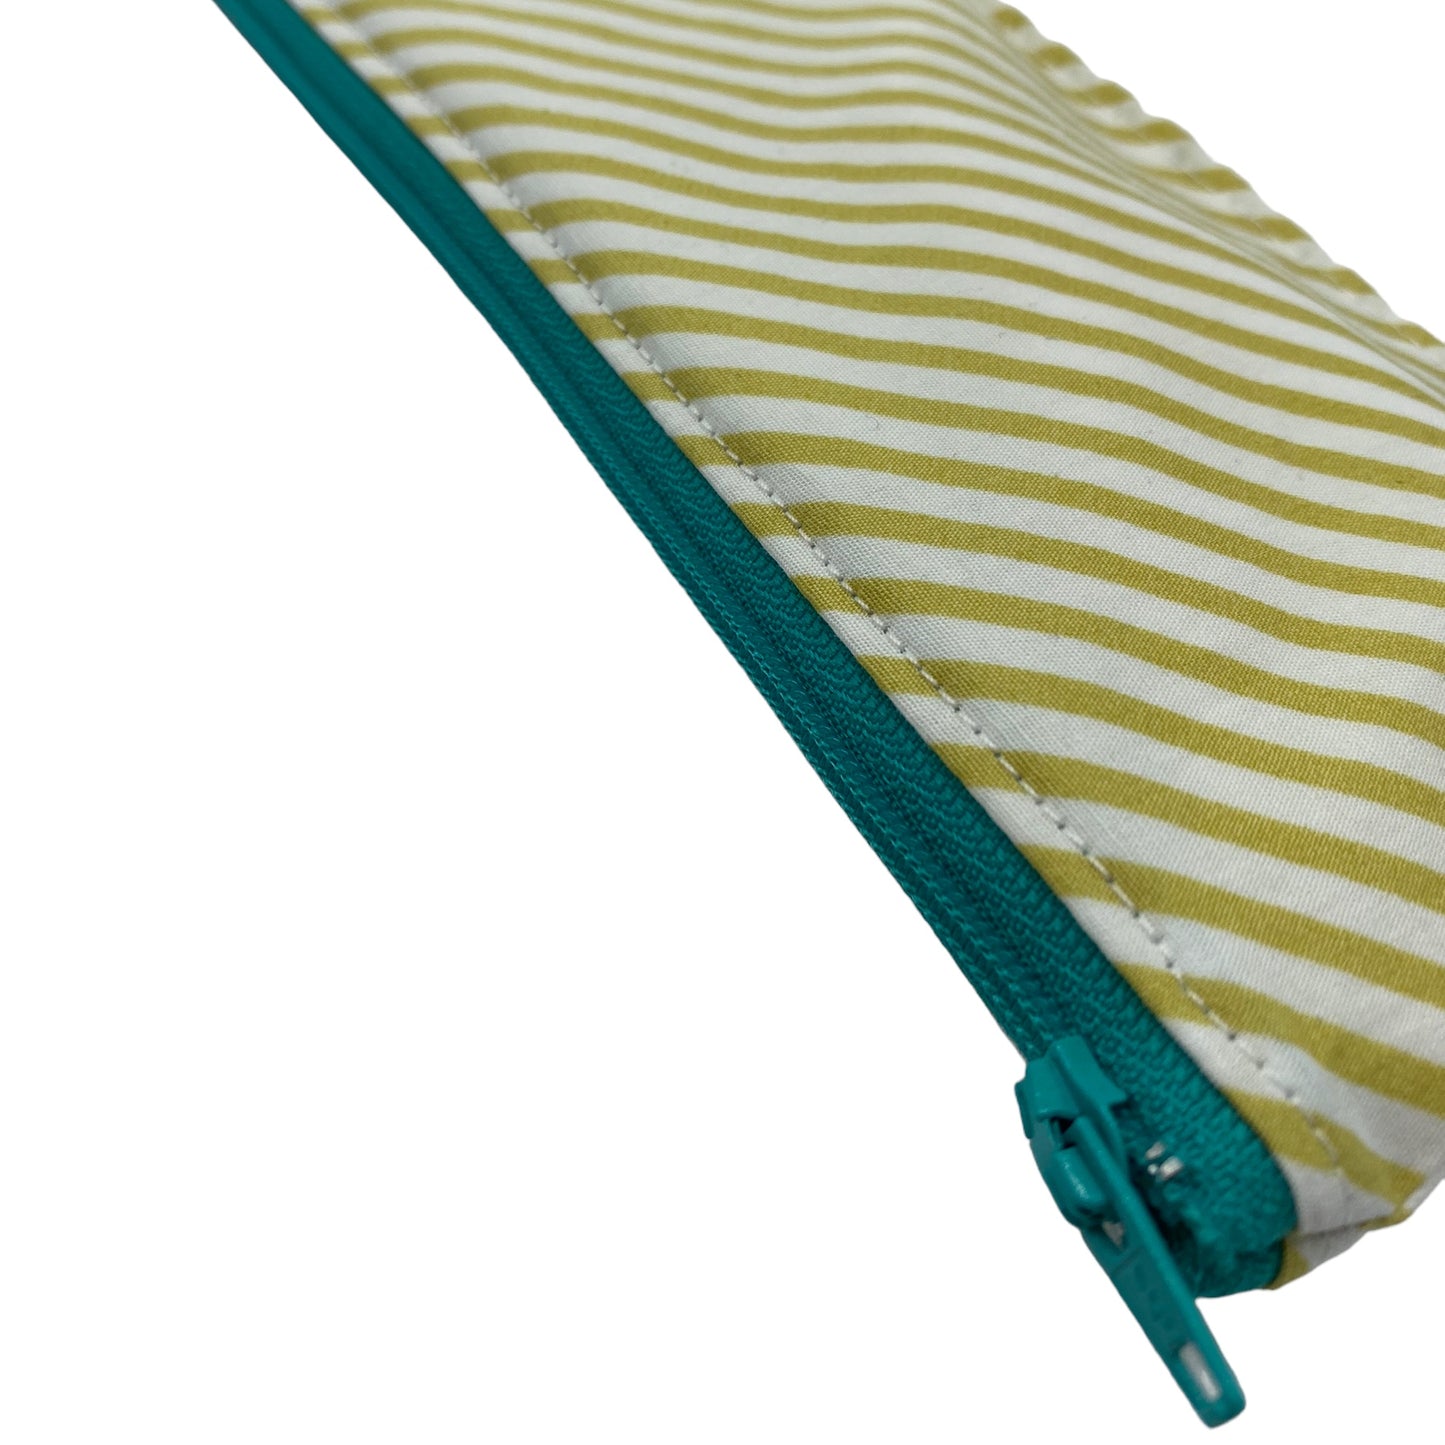 Regular Sized Reusable Straw/Utensil Wet Bag Stripes Bias Green